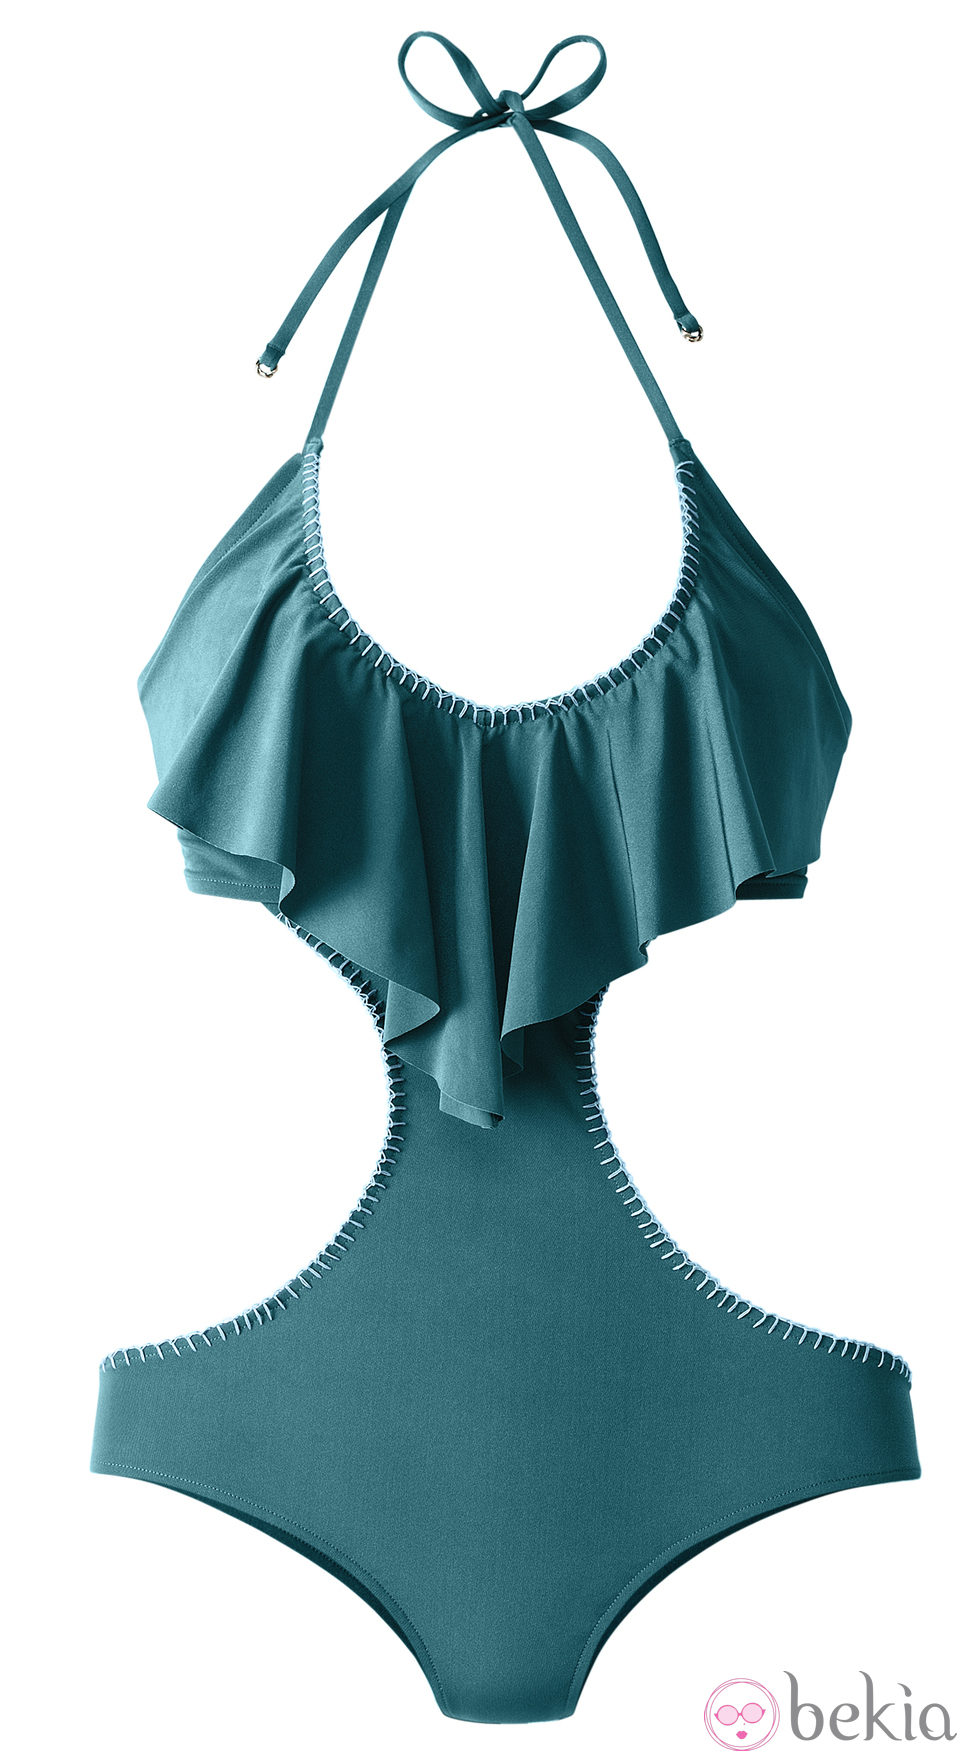 Triquini color turquesa de la colección de baño primavera/verano 2013 de H&M